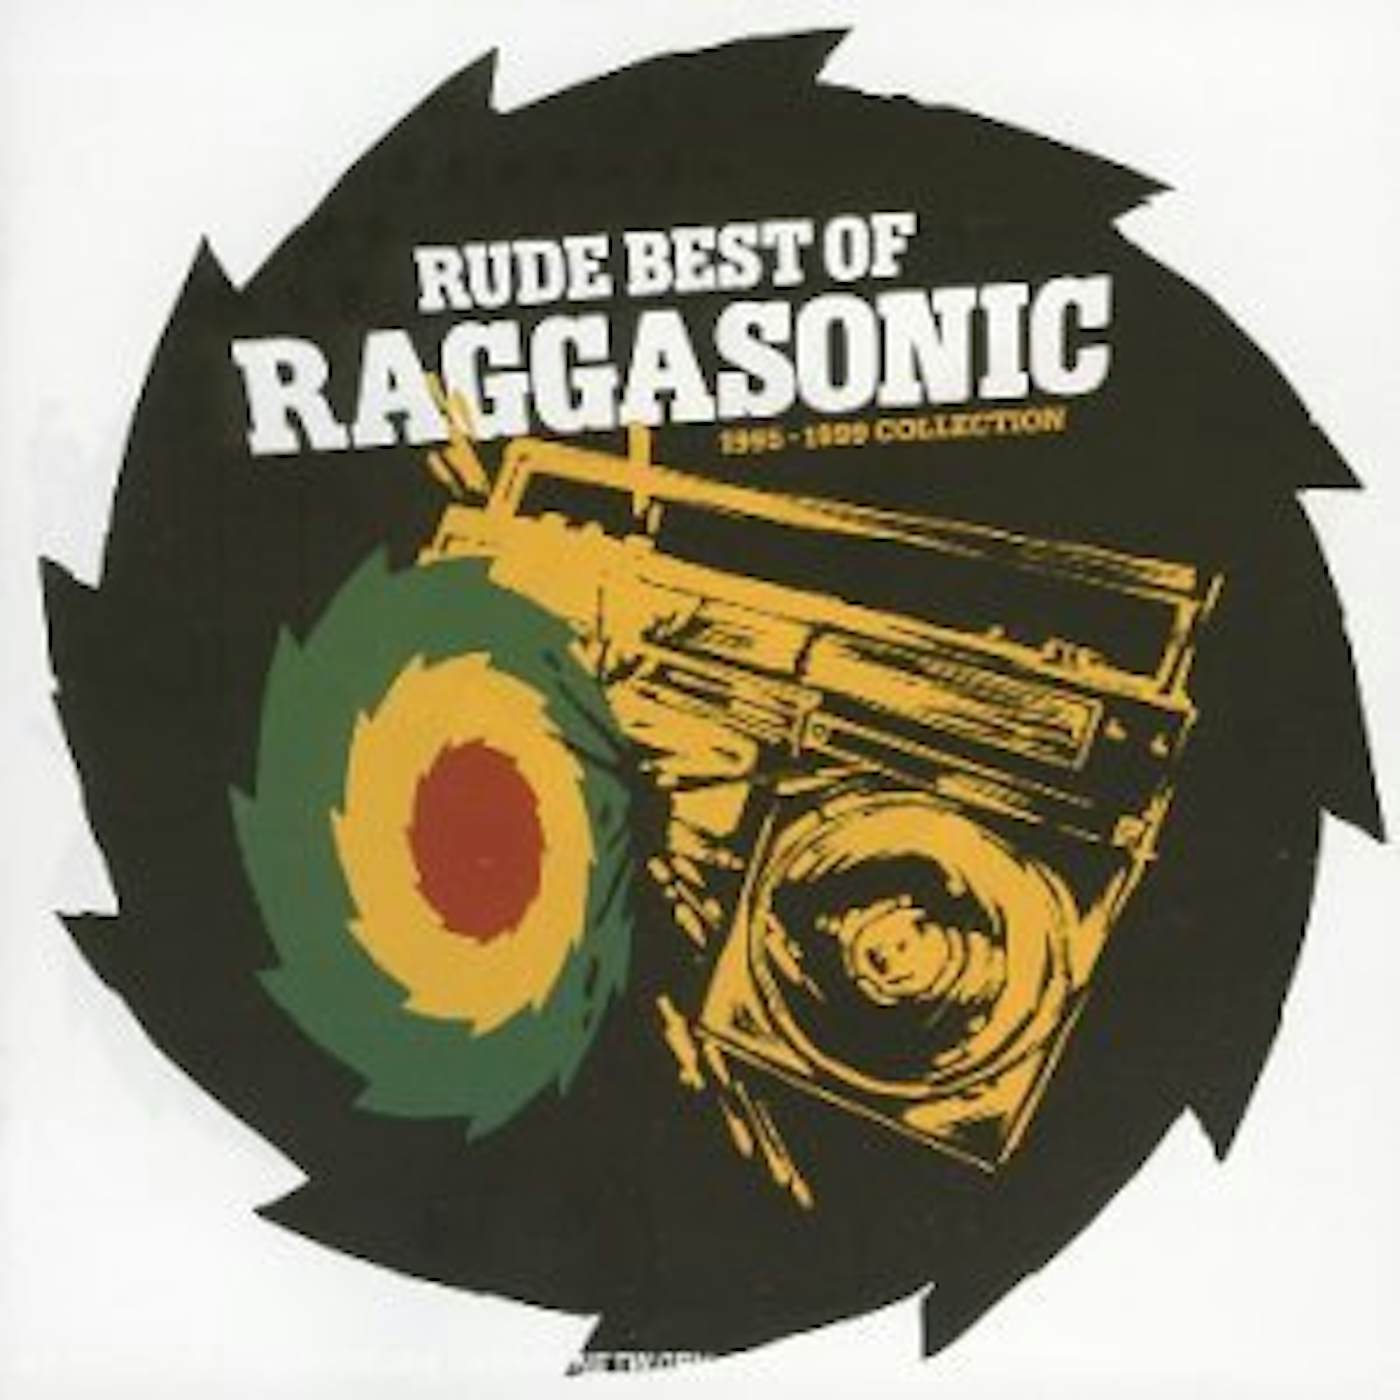 Raggasonic RUDE BEST OF (95-99) CD